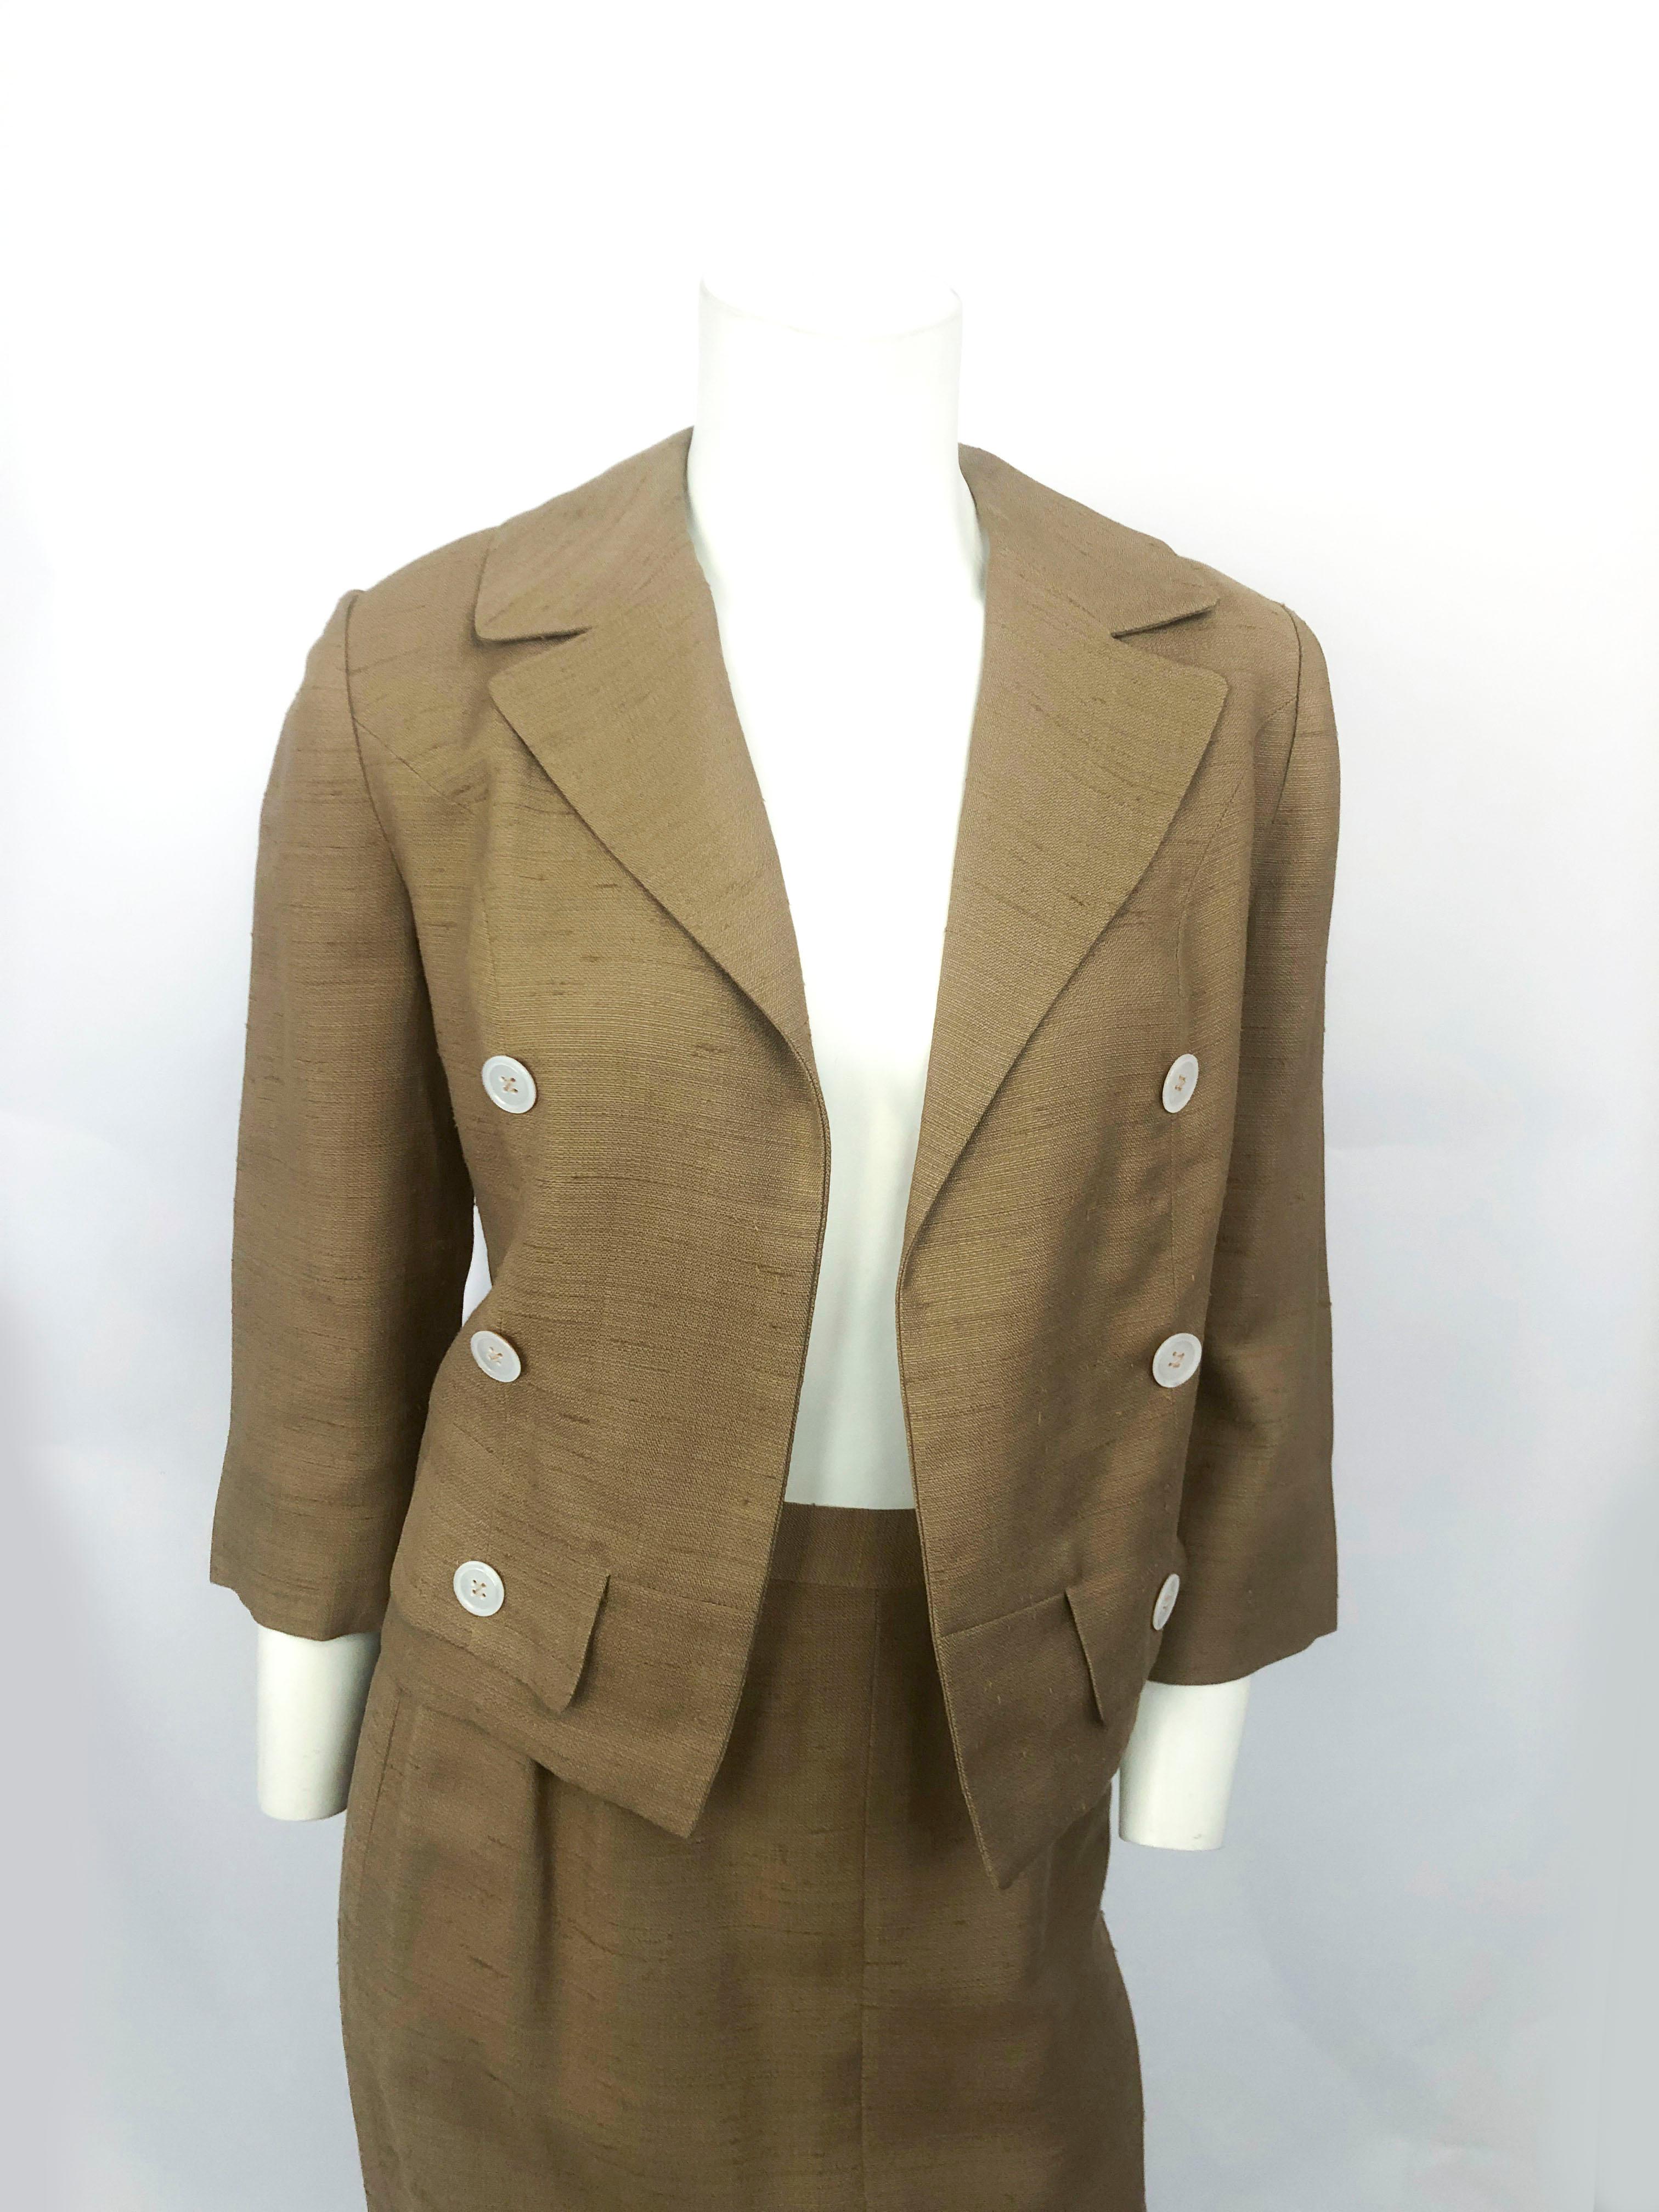 Costume en soie brute I. Magnin de la fin des années 1950 au début des années 1960, de couleur or mat, avec boutons en coquille d'ormeau, col à revers, fausses poches et manches en forme de gants. La veste est de style boléro. La jupe a une